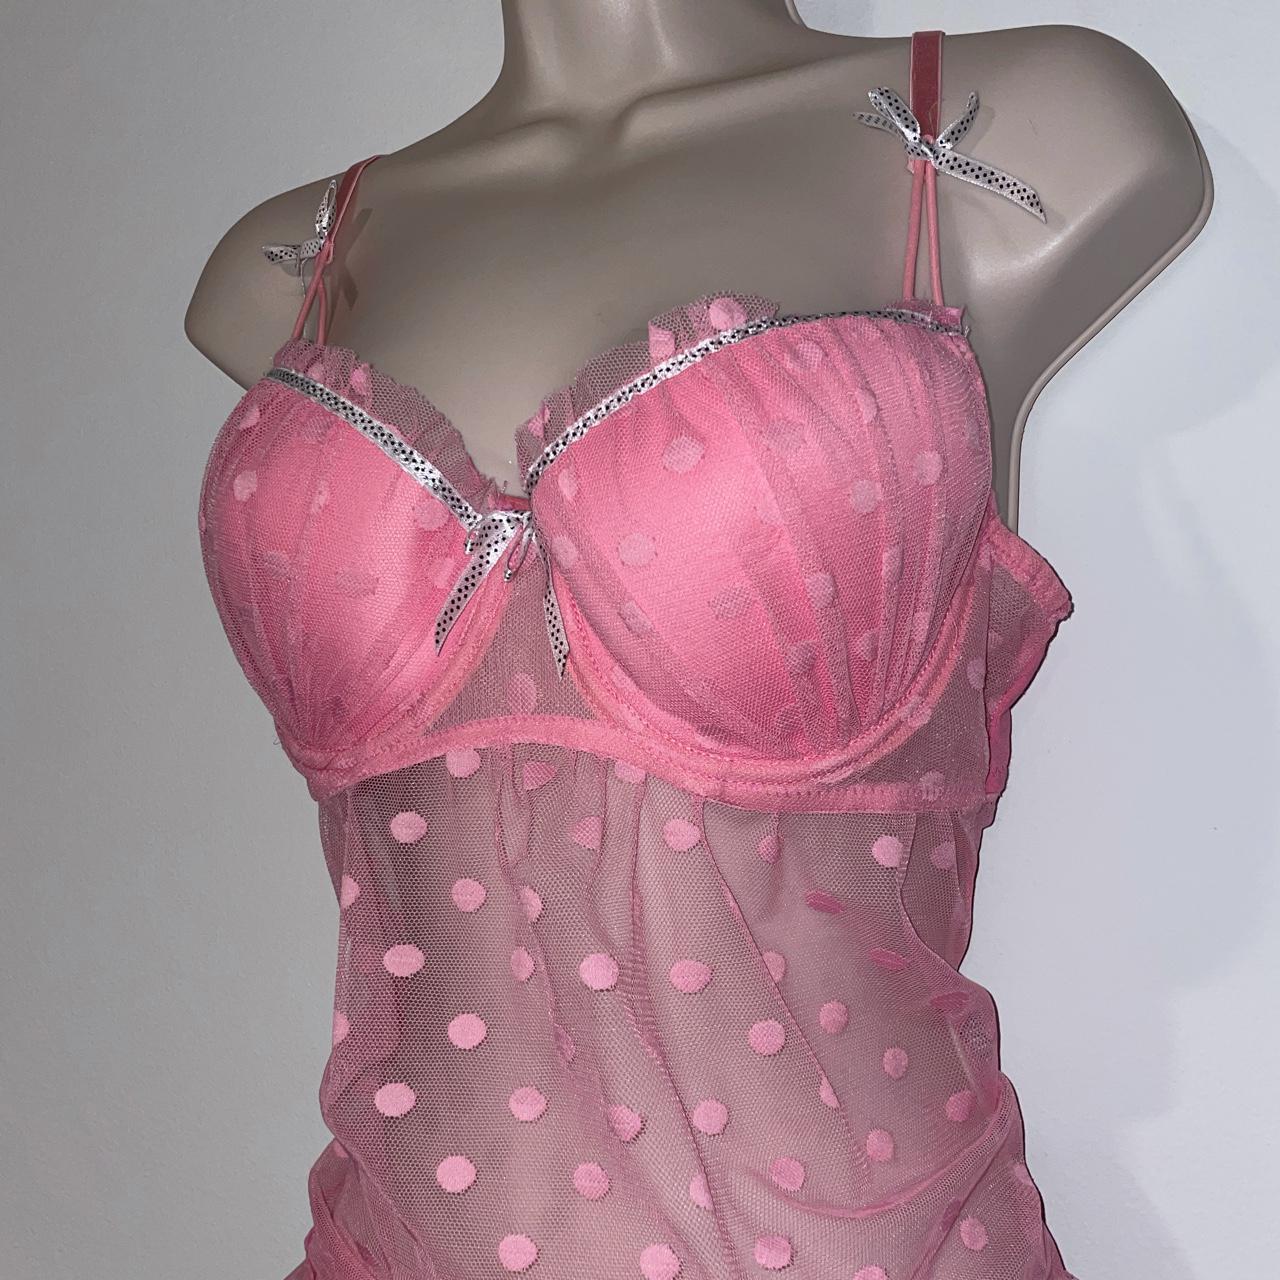 Product Image 2 - Bubblegum princess lingerie top 🌸


-Tied